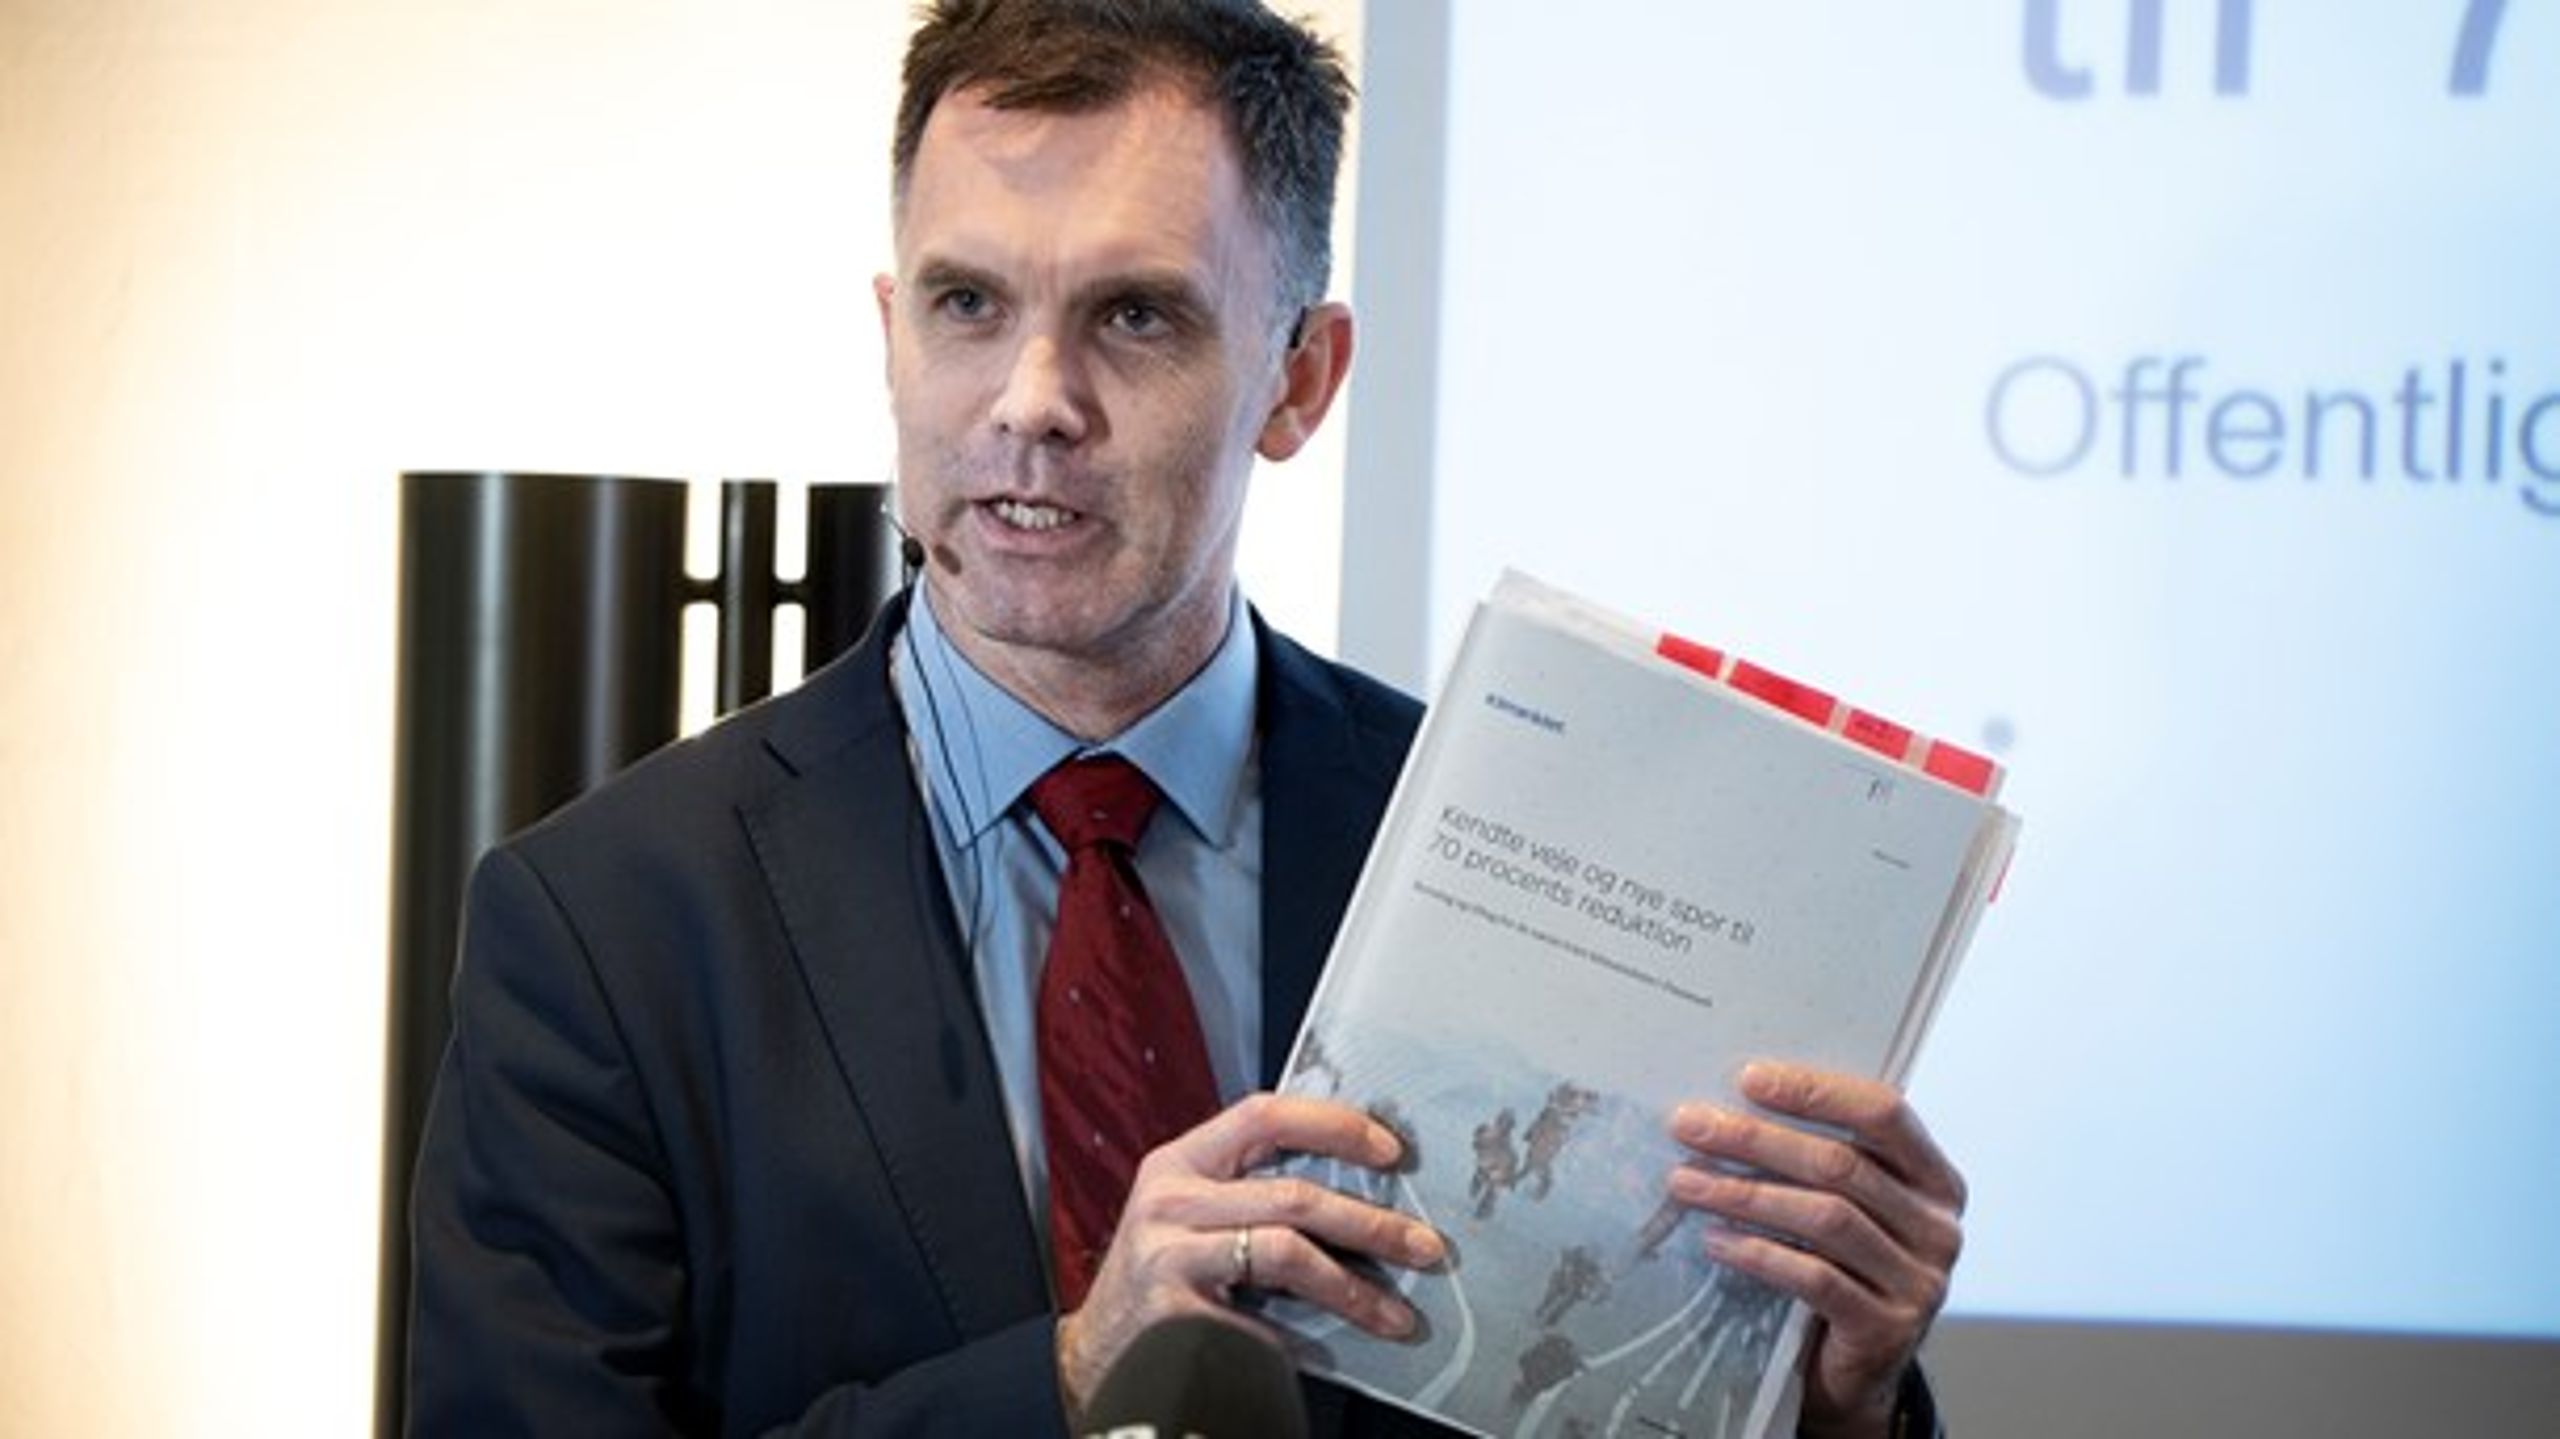 Klimarådet med formand Peter Møllgård i spidsen præsenterede i marts rapporten "Kendte veje og nye spor til 70 procents reduktion".